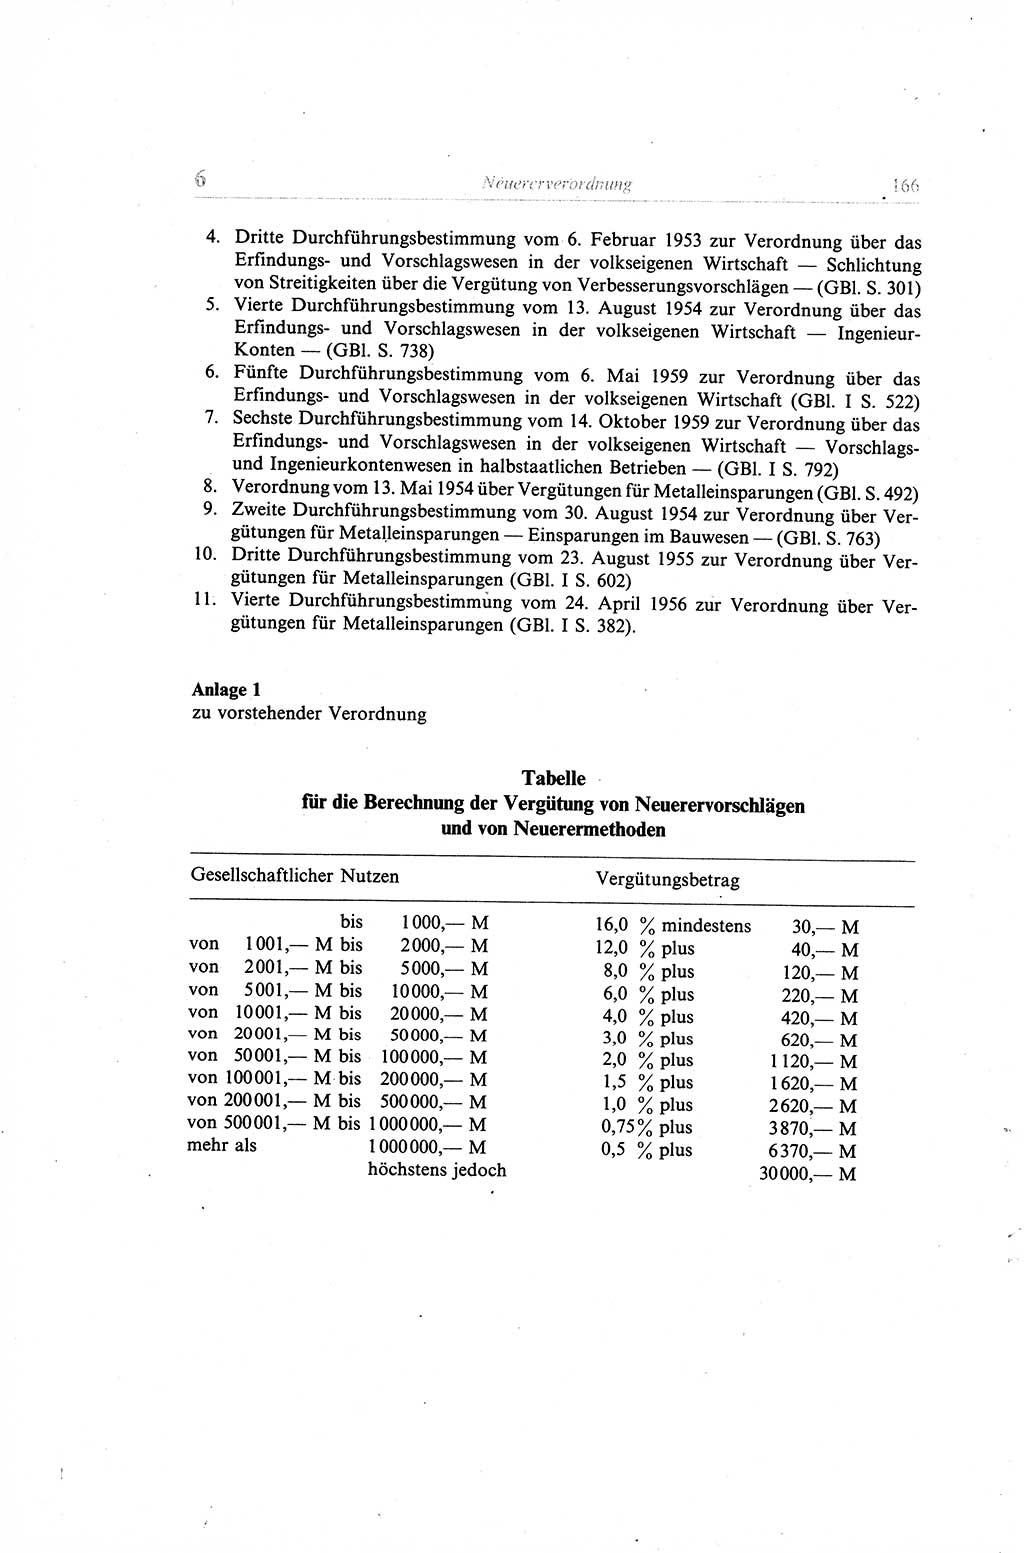 Gesetzbuch der Arbeit (GBA) und andere ausgewählte rechtliche Bestimmungen [Deutsche Demokratische Republik (DDR)] 1968, Seite 166 (GBA DDR 1968, S. 166)